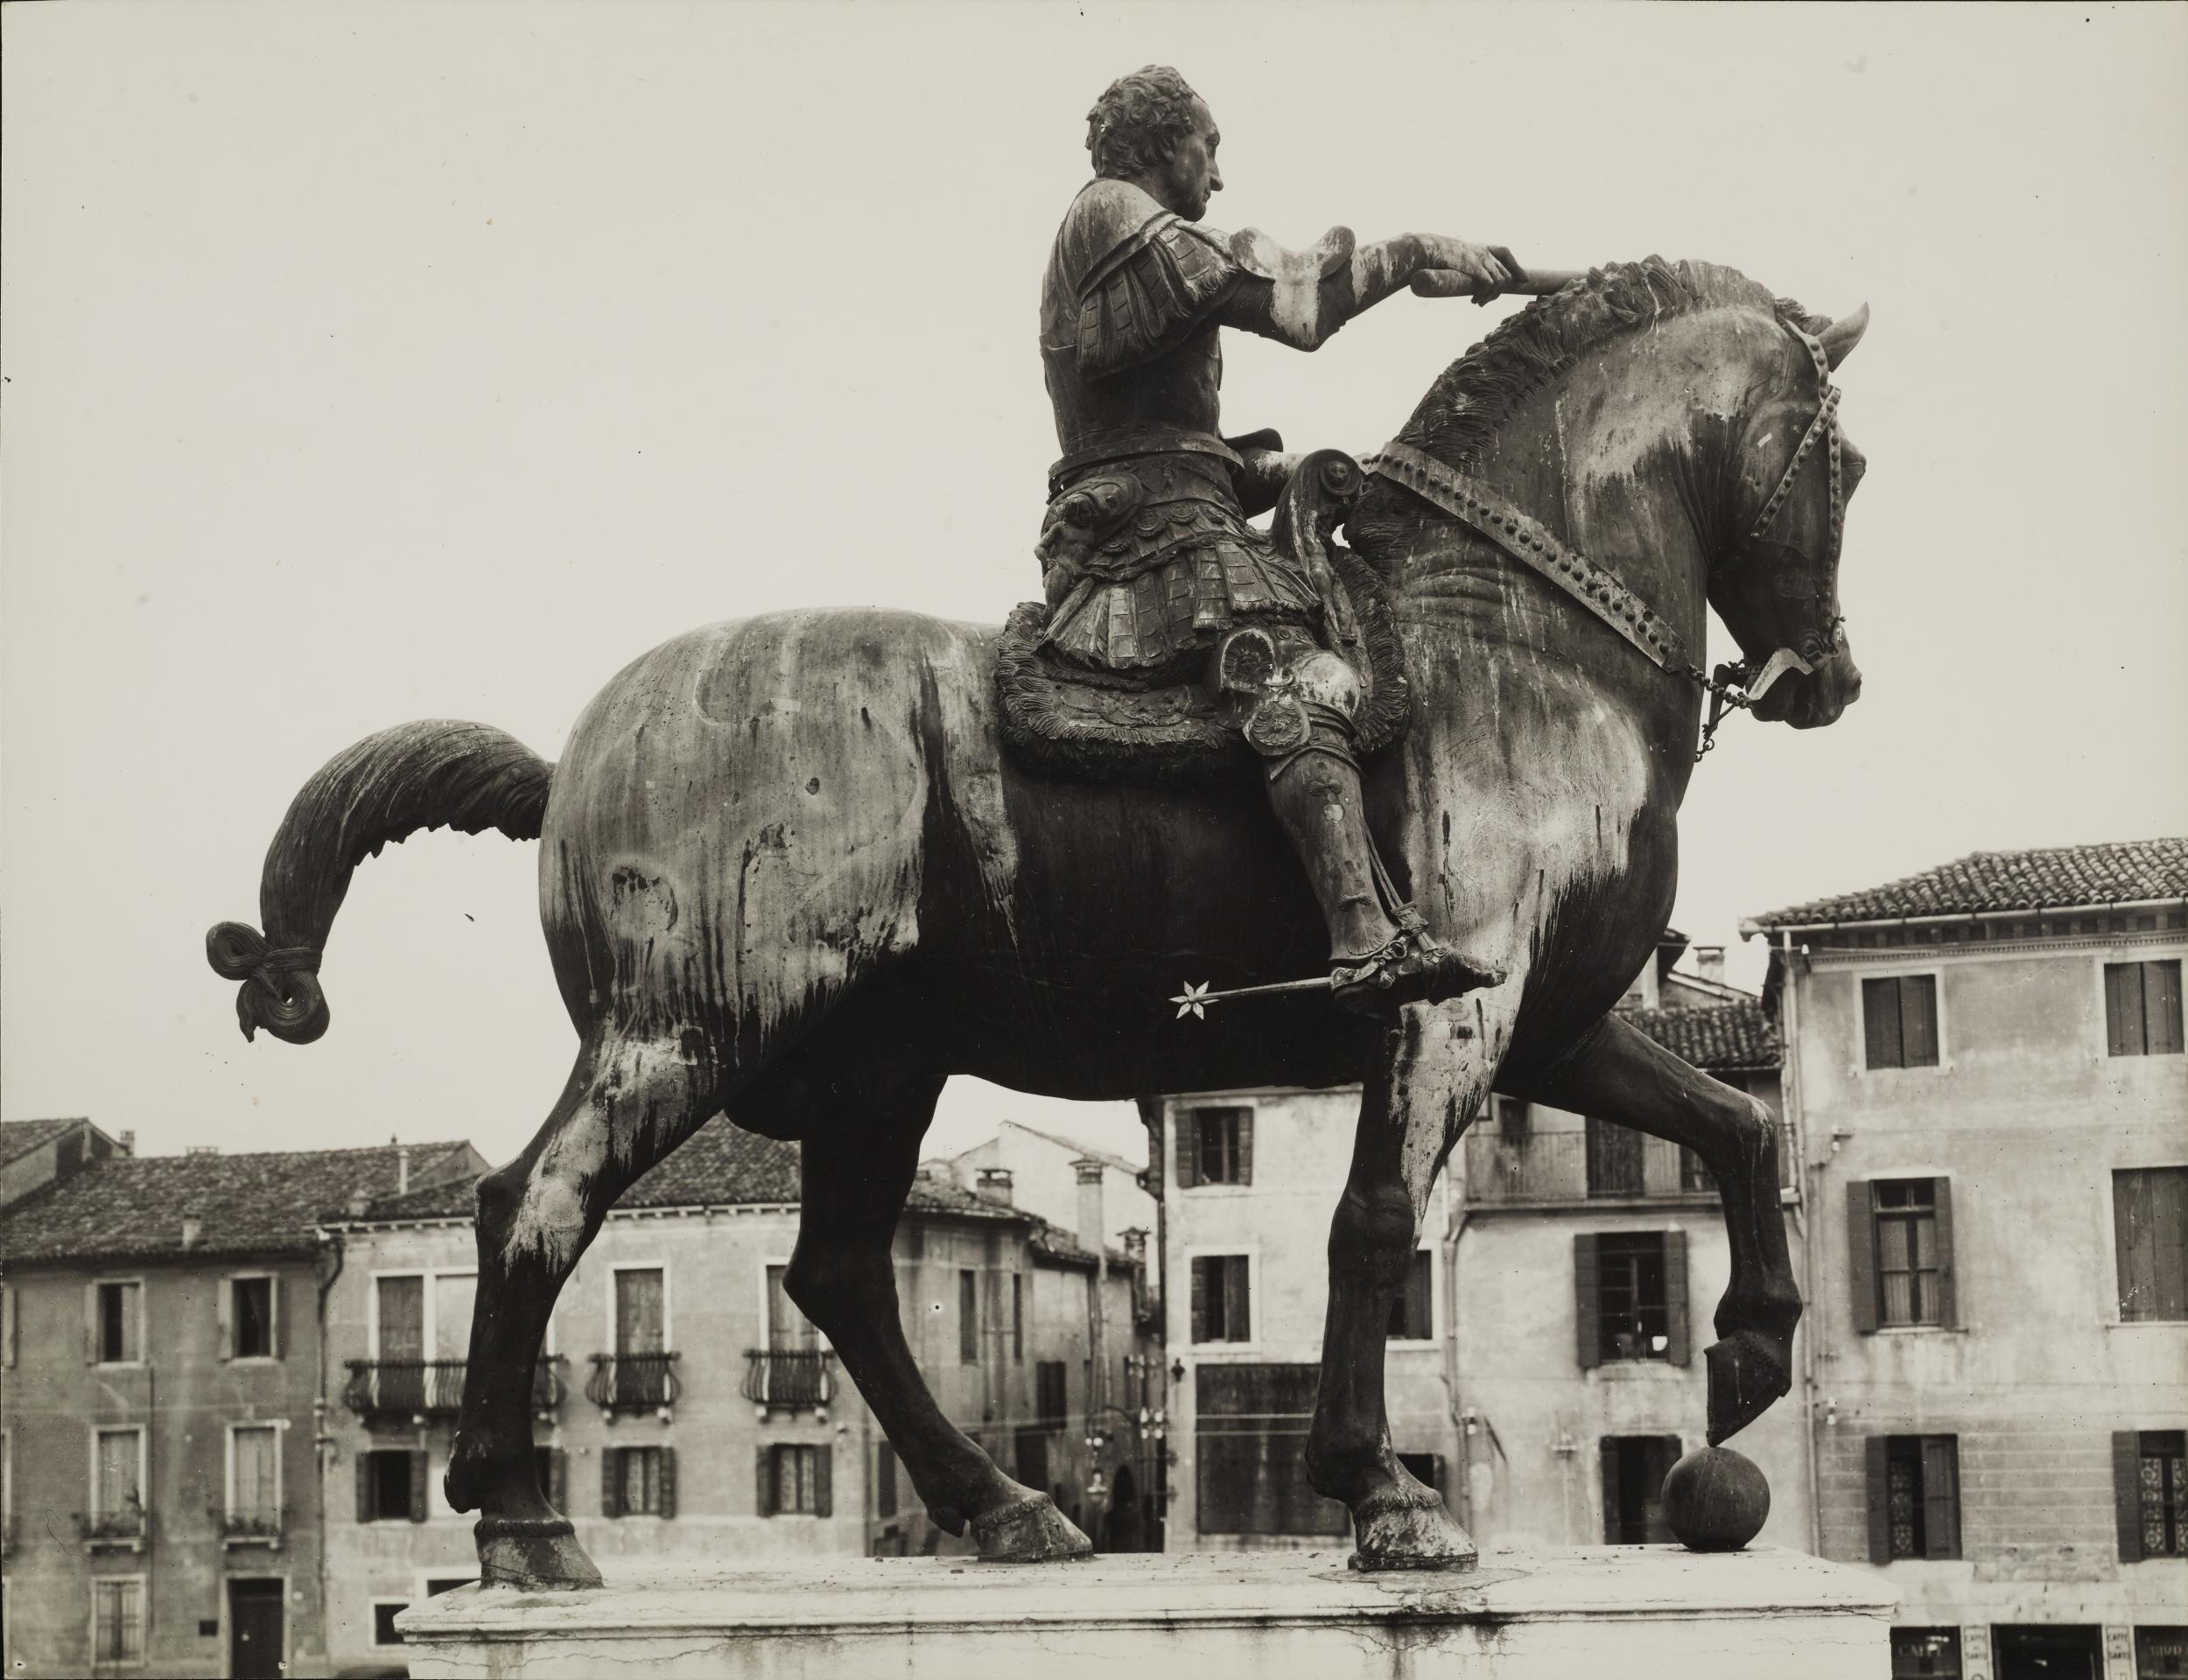 Gino Malenotti, Padova - Monumento equestre al Gattamelata, fianco destro, gelatina ai sali d'argento, MPI6073258